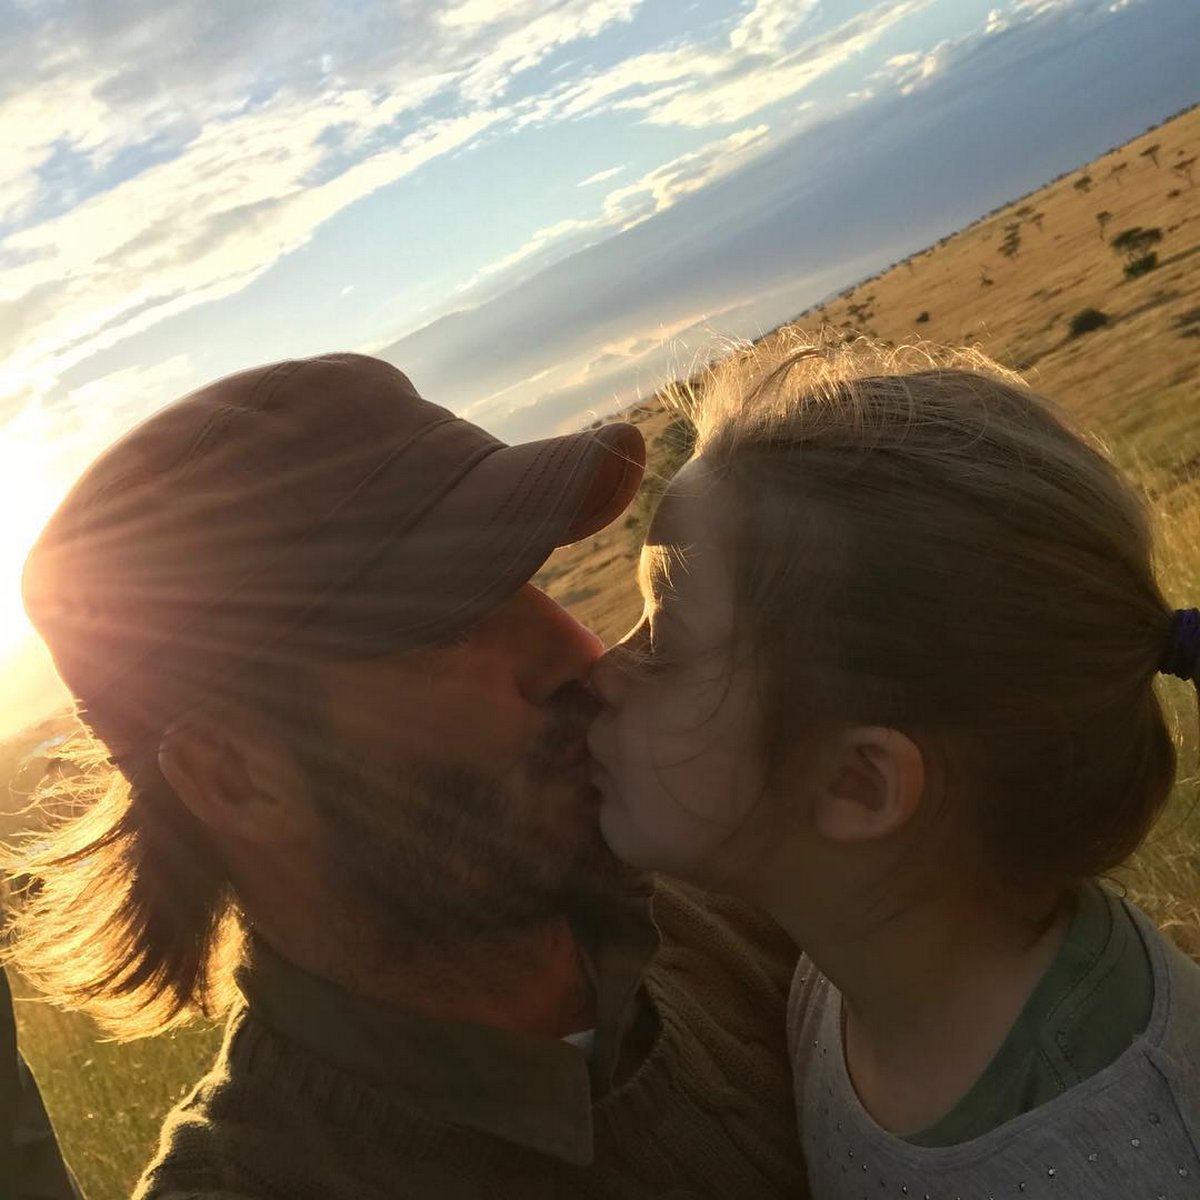 David Beckham déclenche un débat sur la parentalité après avoir embrassé sa fille sur les lèvres